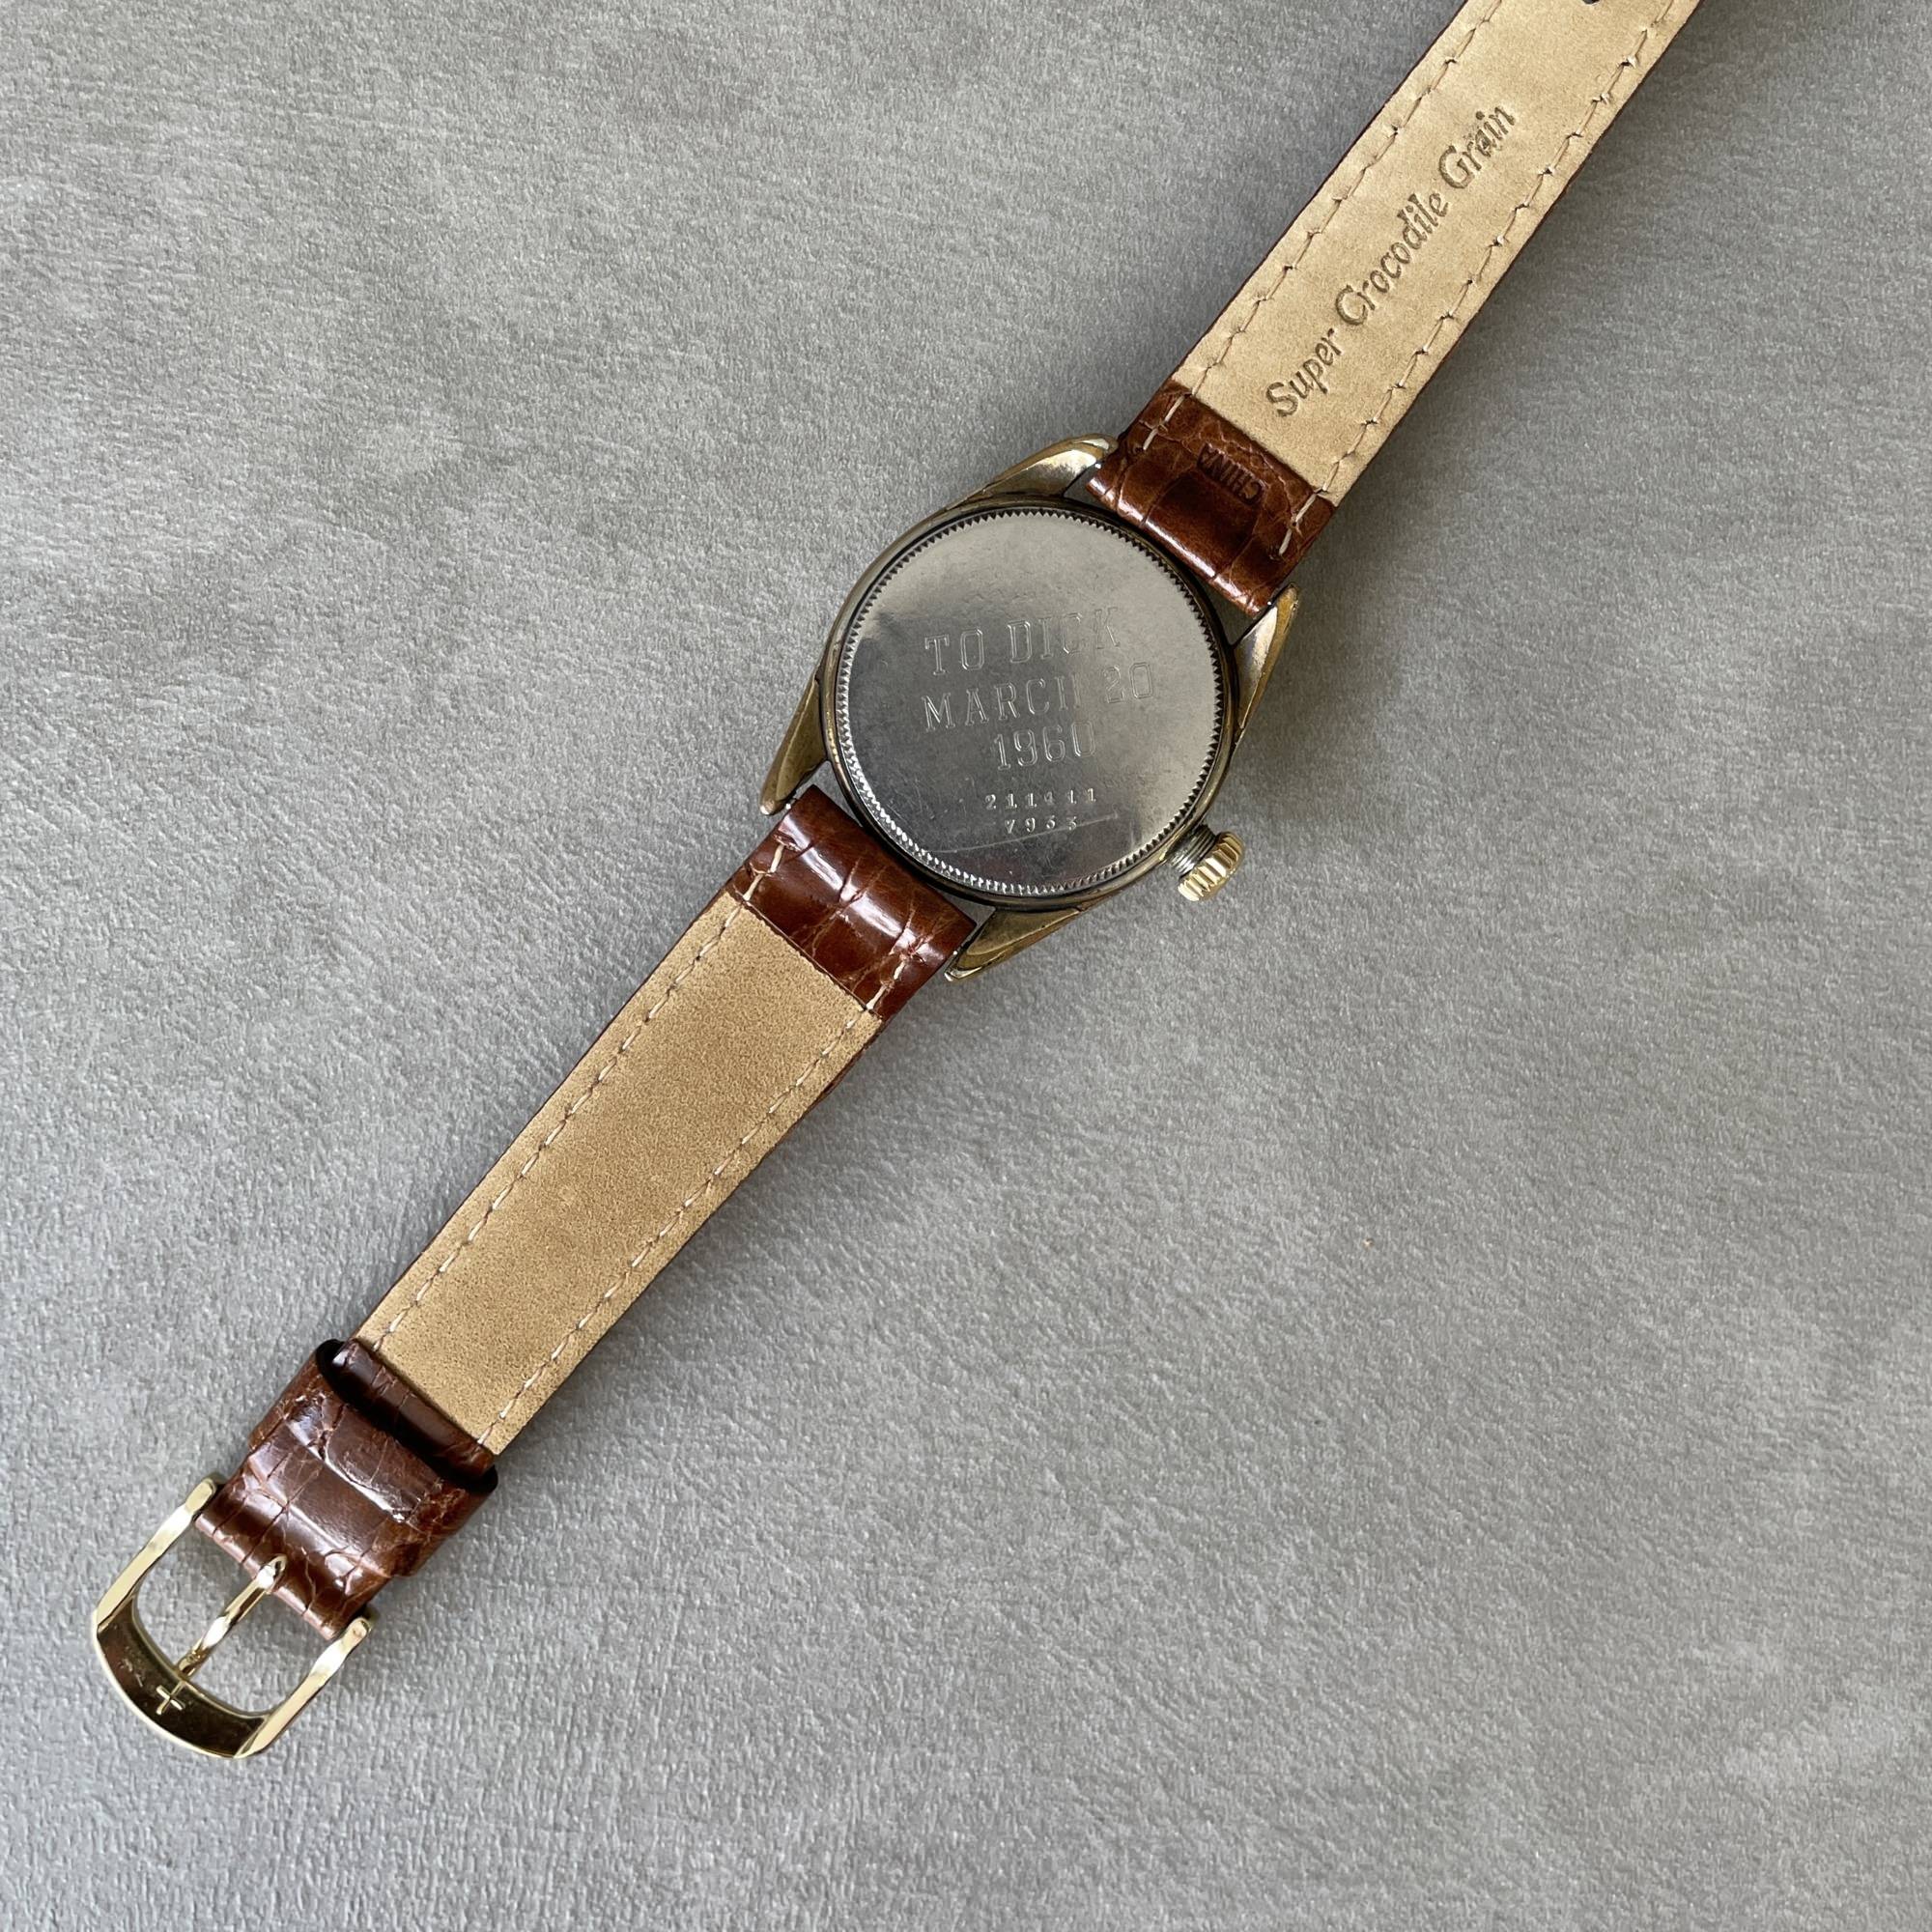 OthersTUDOR 1950s Vintage Watch / OYSTER REGENT